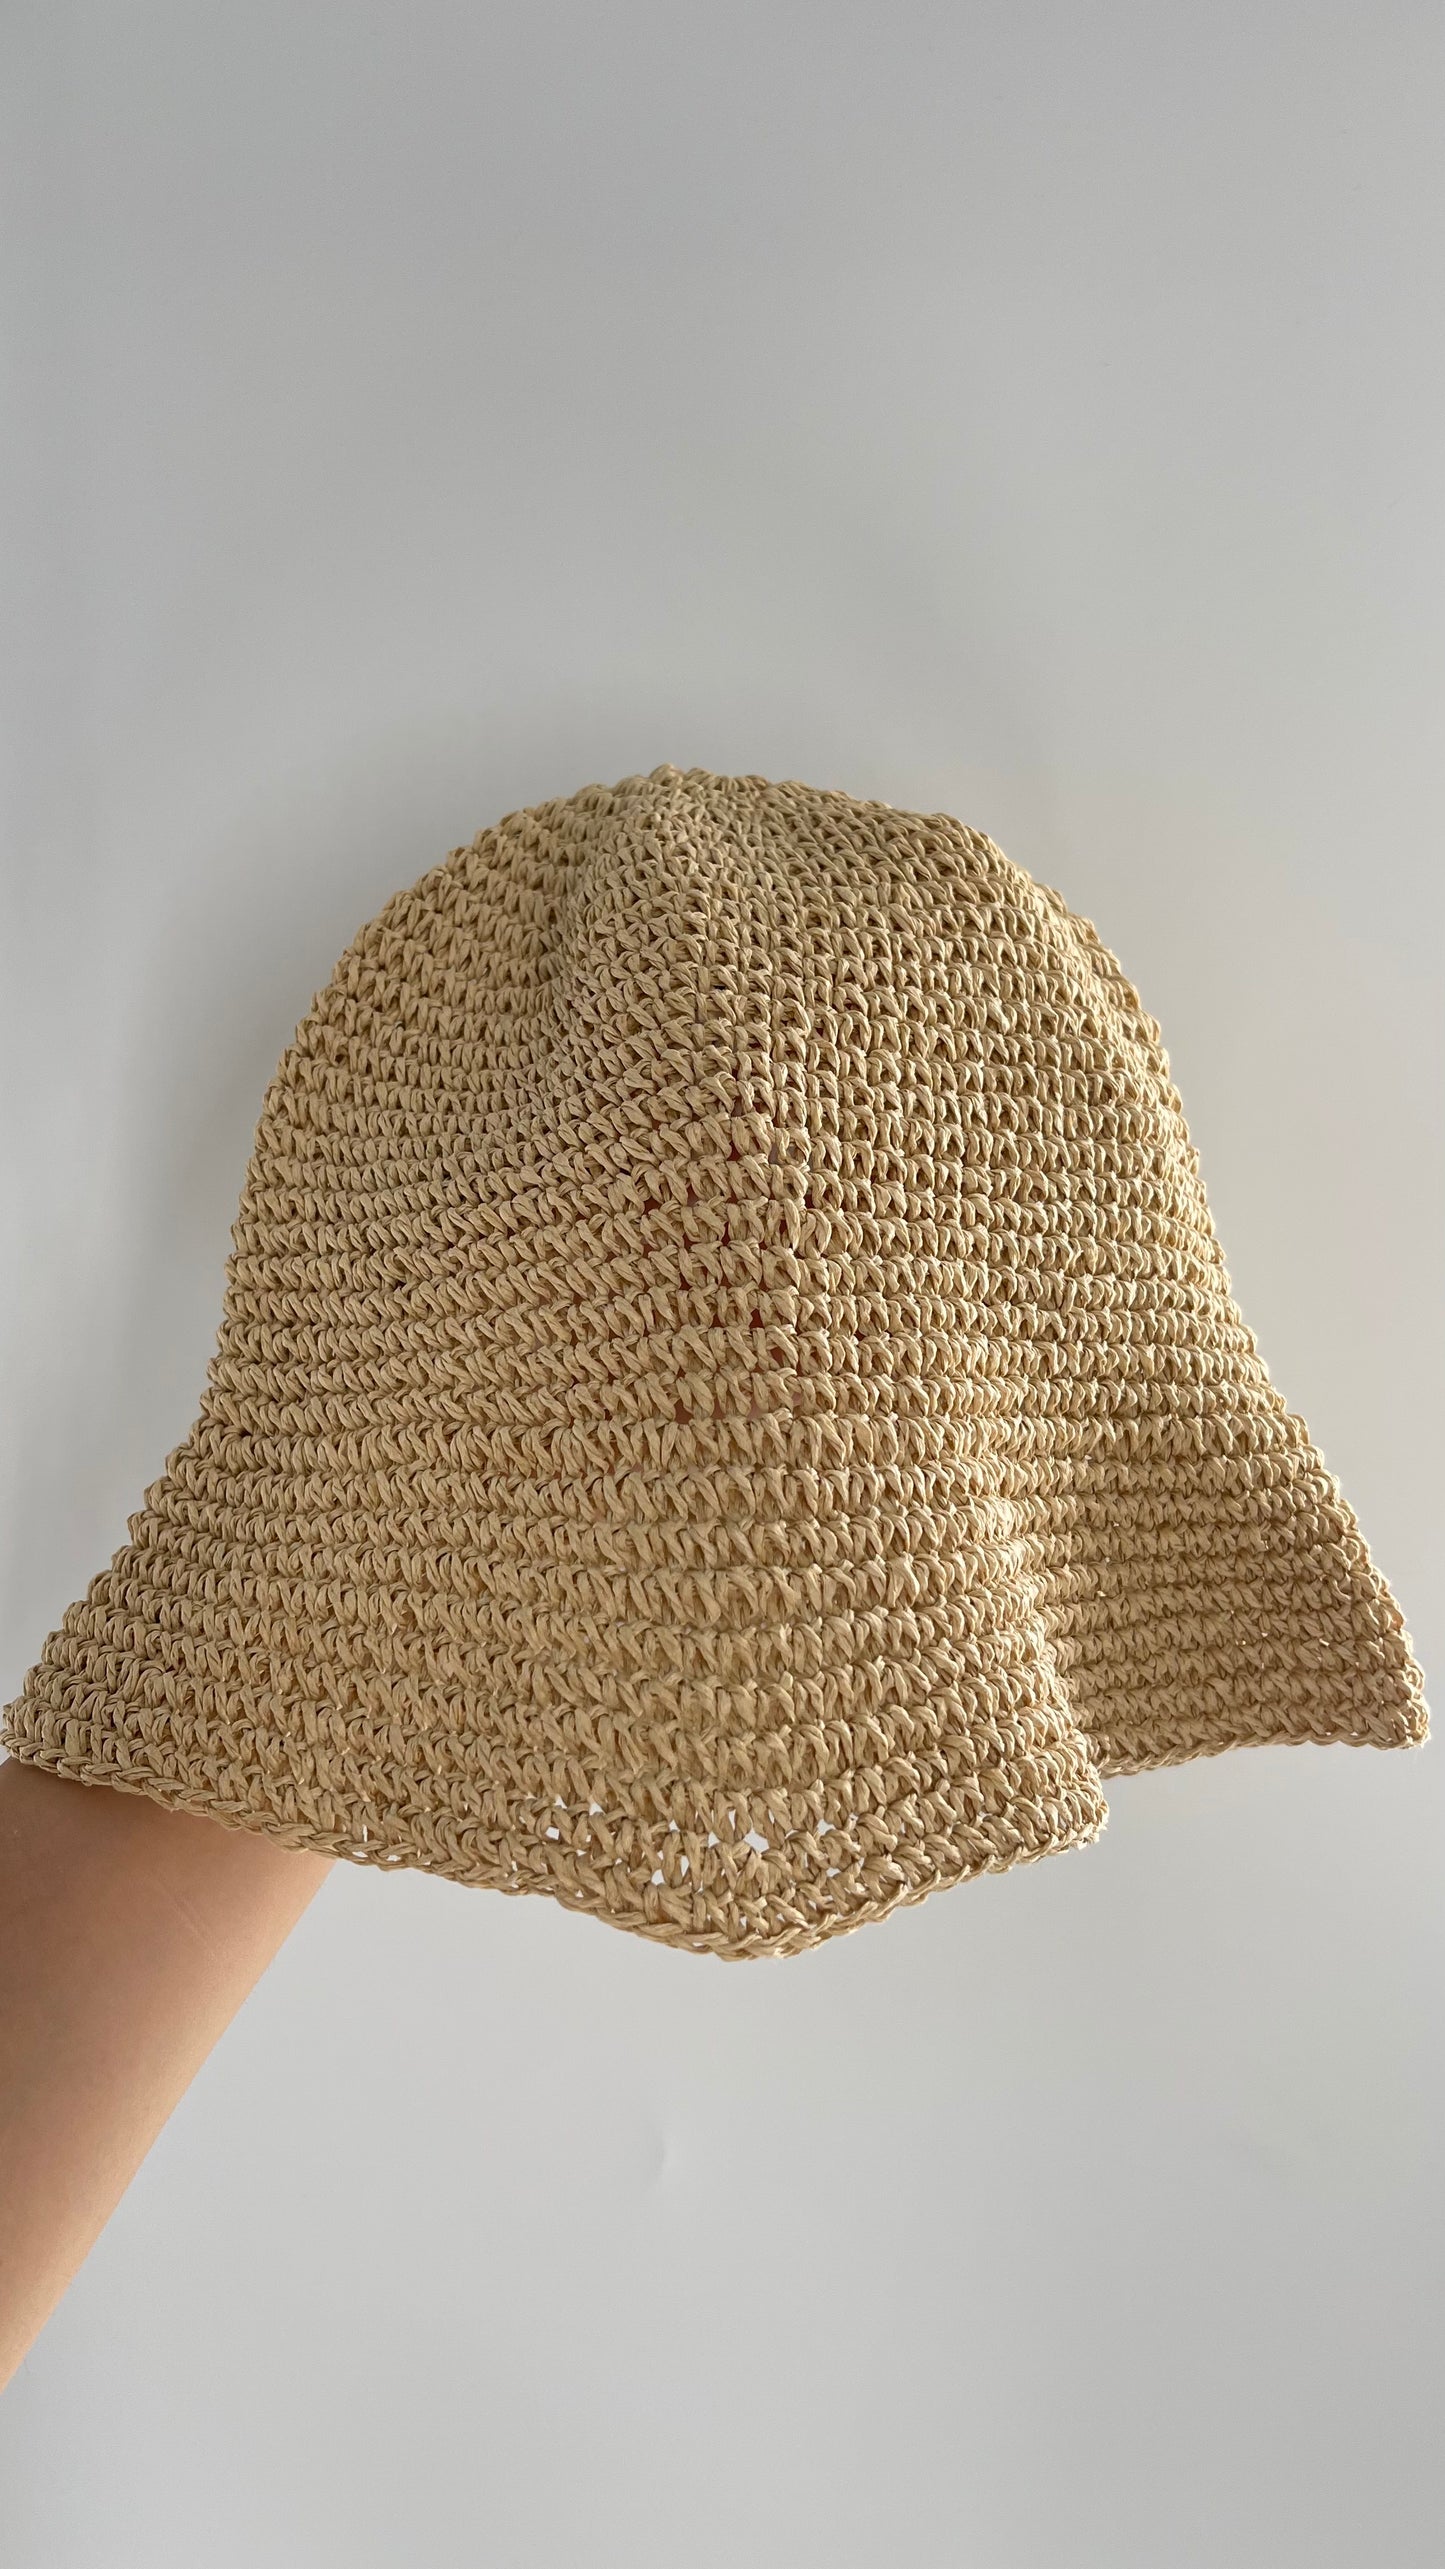 Vintage Straw Sun Hat